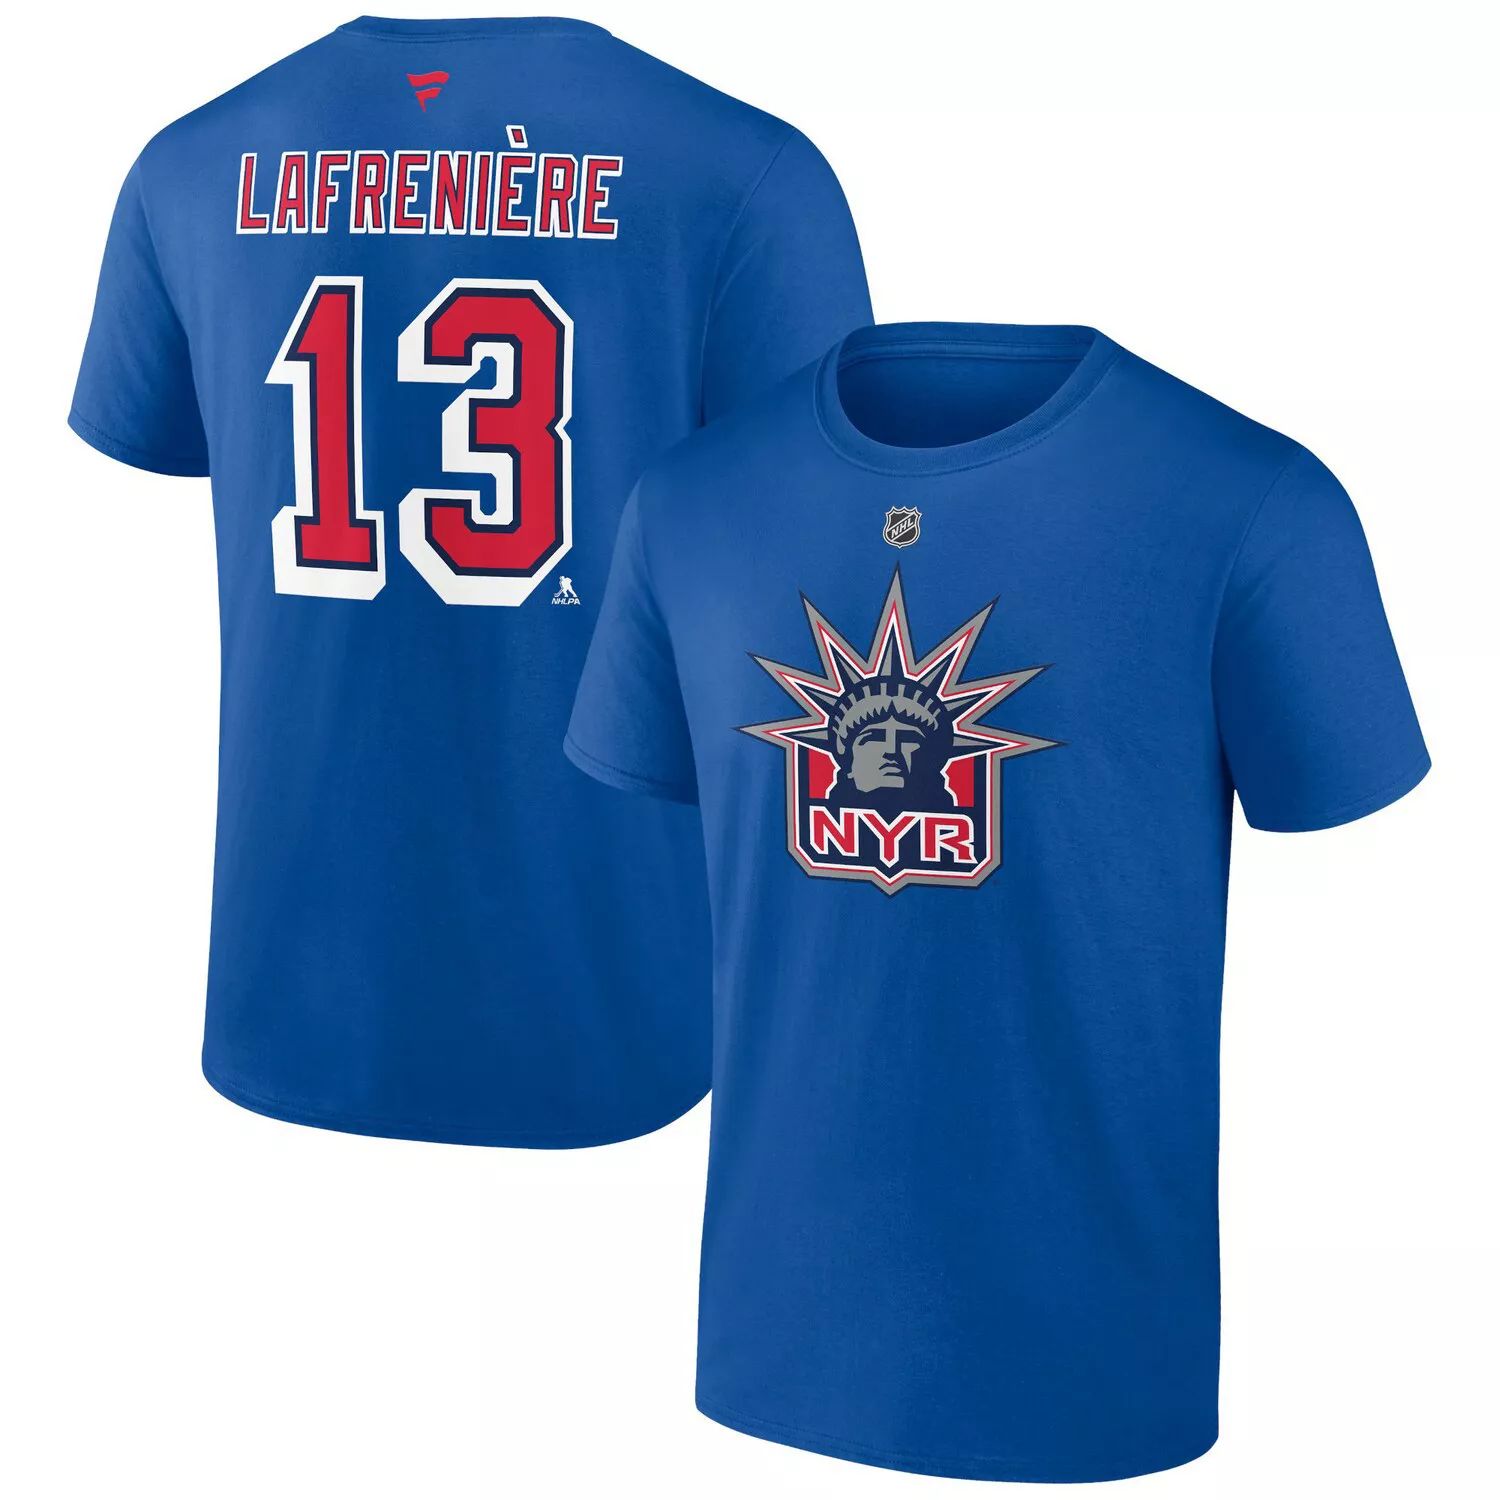 Мужская футболка с именем и номером Alexis Lafreniere Royal New York Rangers Special Edition 2.0 Fanatics